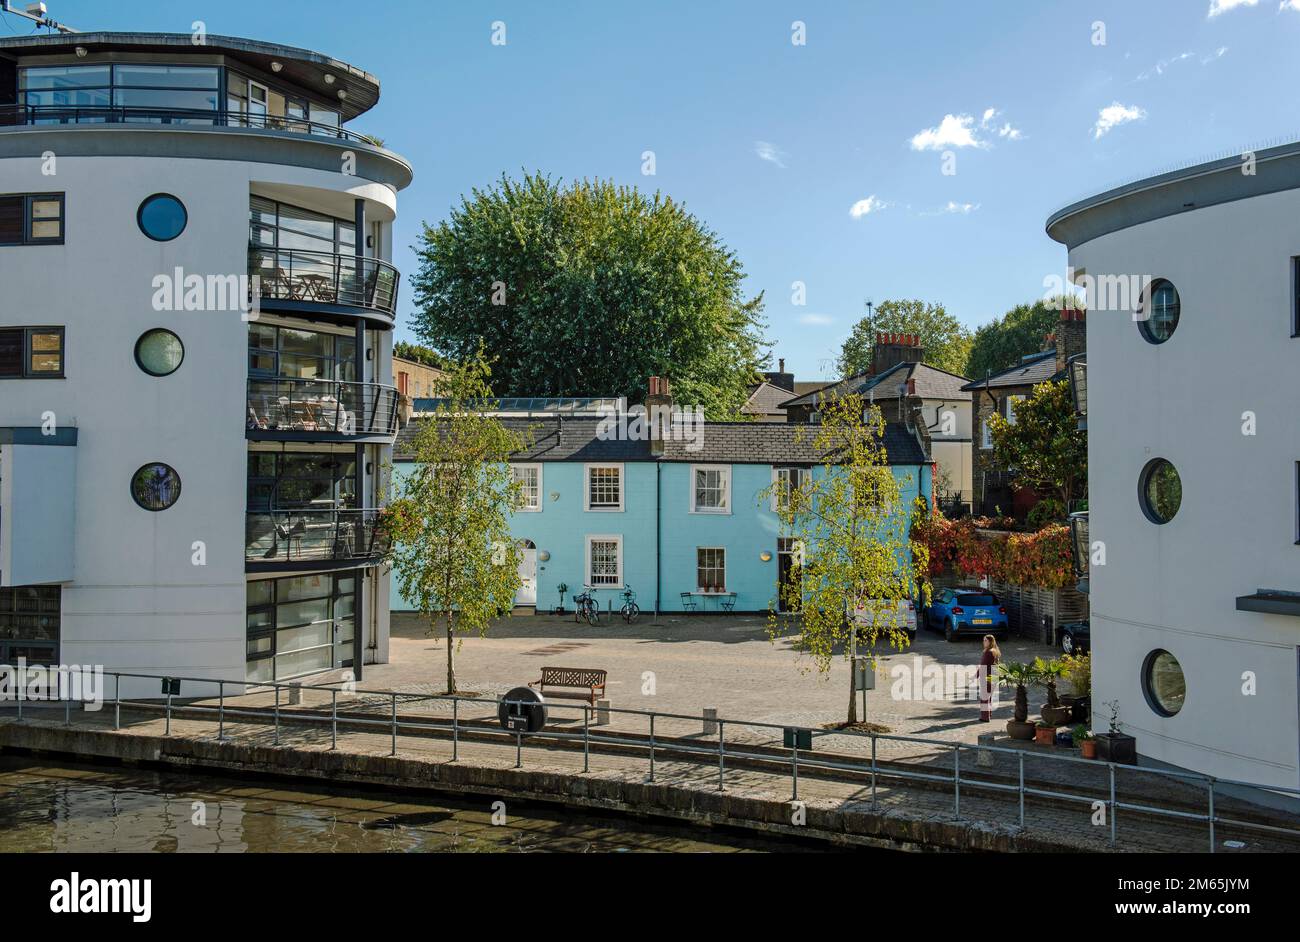 Blau bemalte Terrassenhäuser oder Hütten zwischen modernen Wohnungen, Lawfords oder Lawford's Wharf mit Blick auf Regent's Canal London Borough of Camden Stockfoto